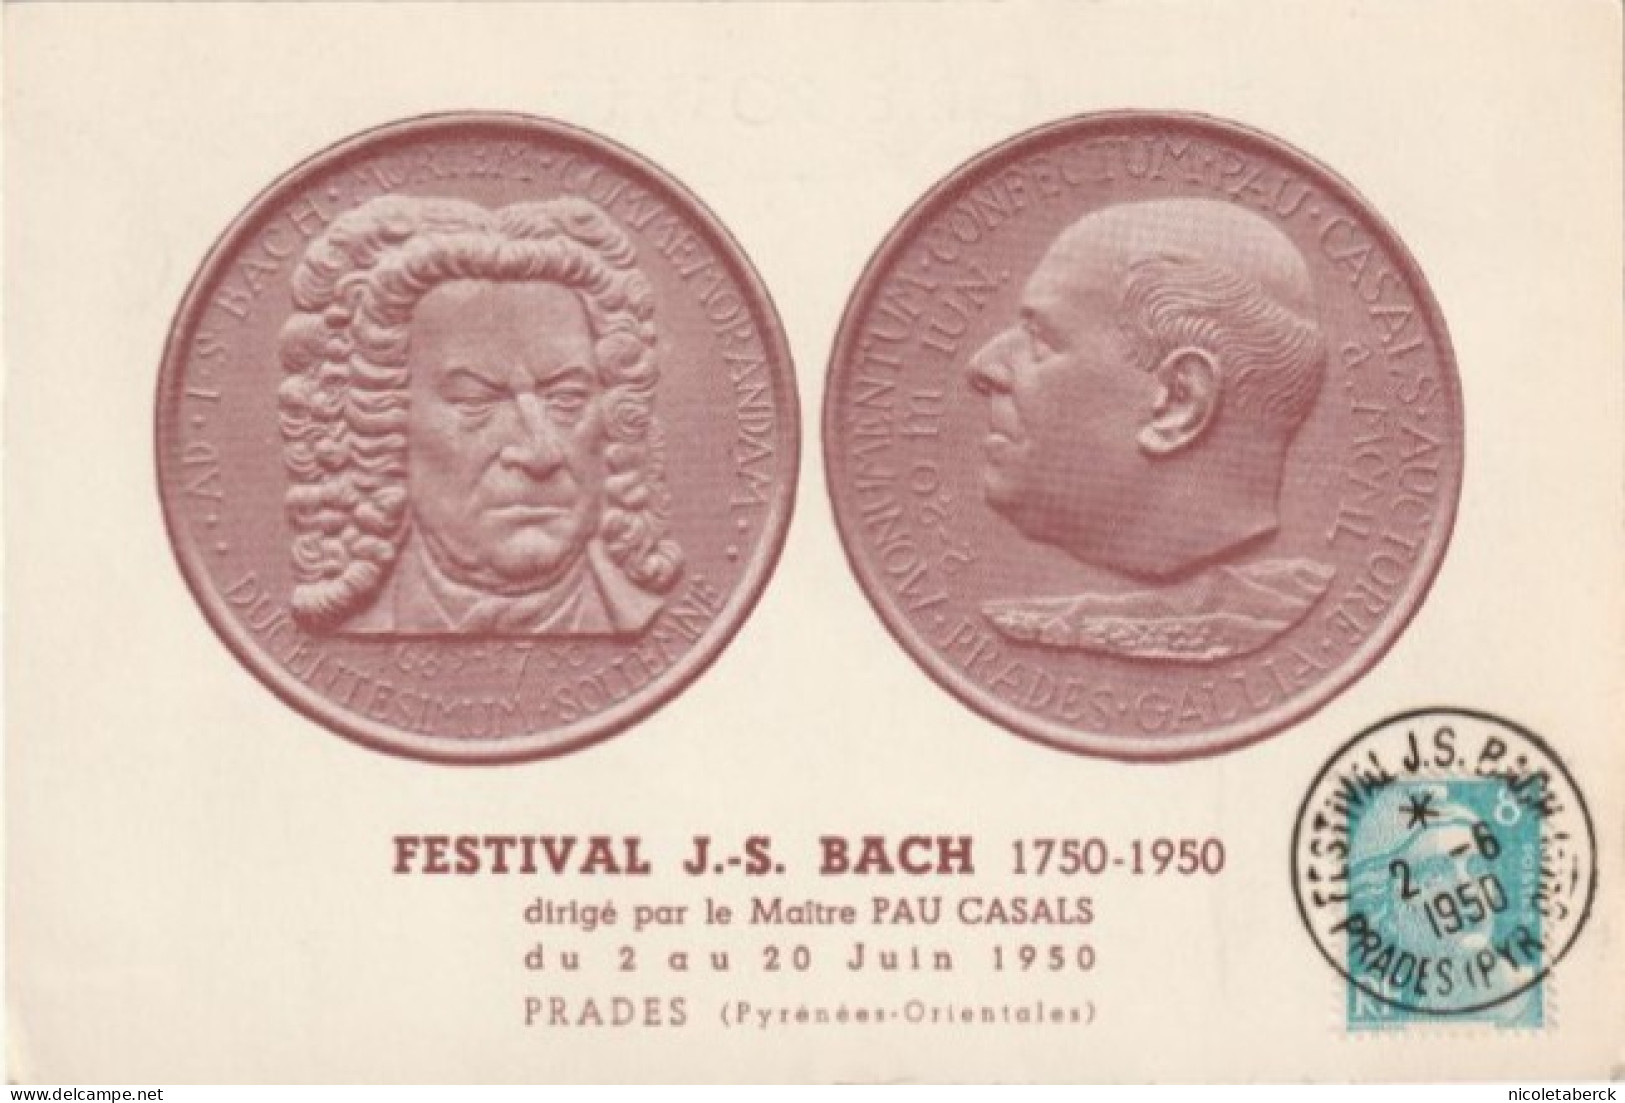 Musique, Carte Du 2/6/50 Festivale Bach Dirigé Par Pau Casals. Carte Rare. Collection BERCK. - Music